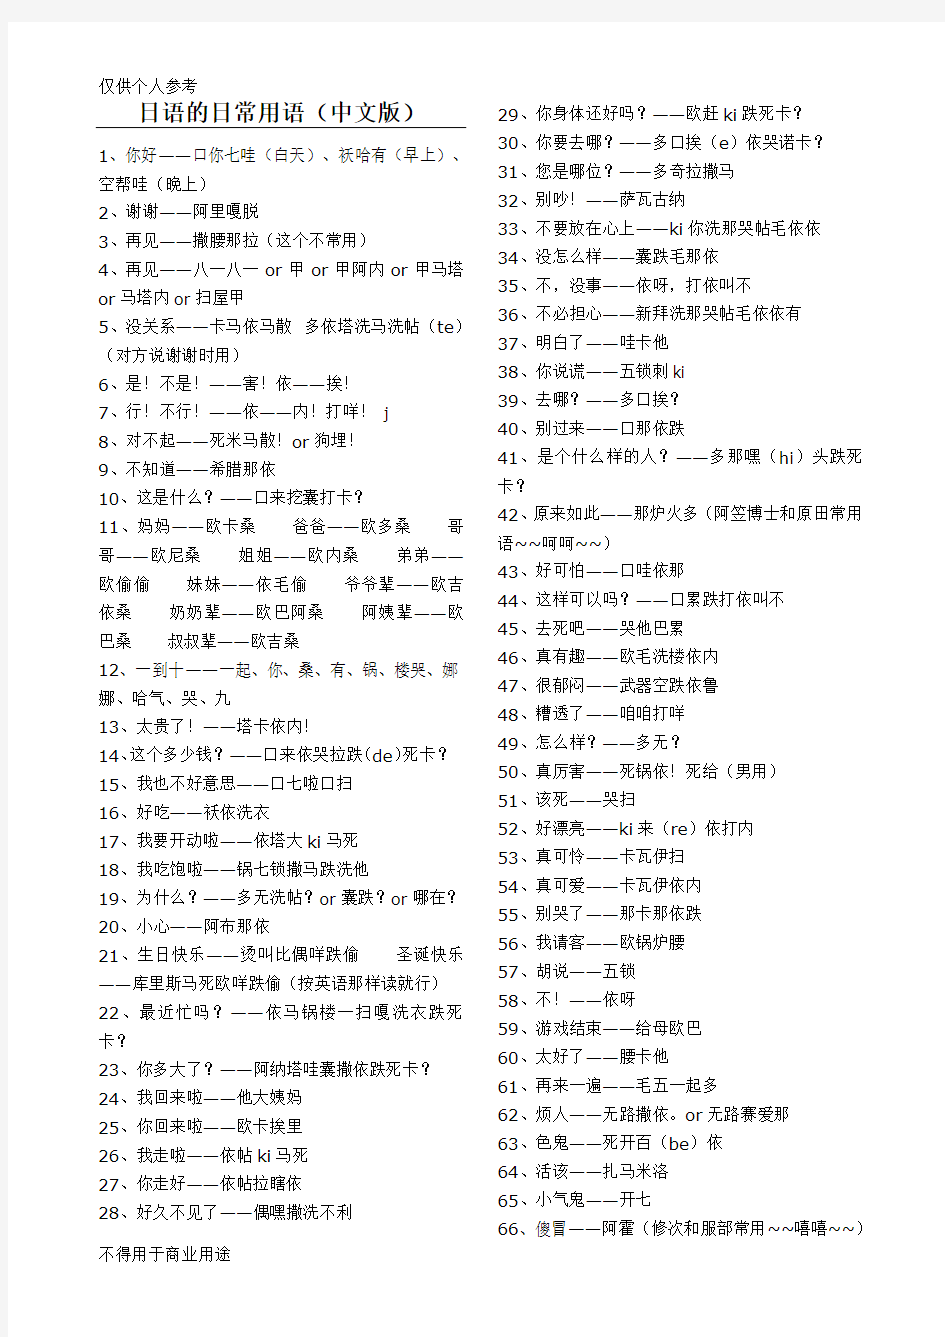 日语的日常用语(中文版)